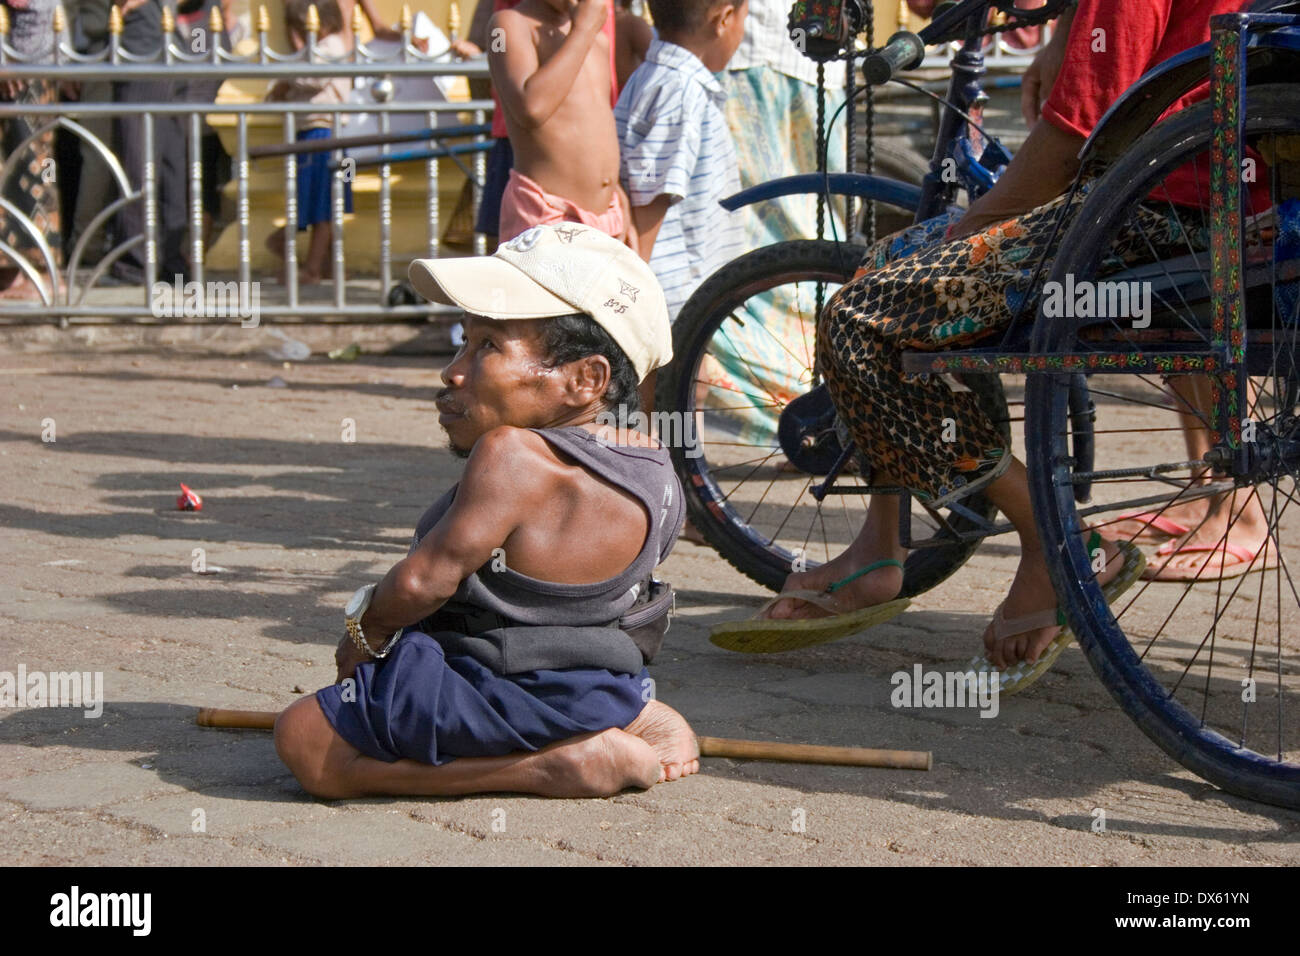 Un homme handicapé est assis sur le sol près d'une personne handicapée en fauteuil roulant à Phnom Penh, Cambodge. Banque D'Images